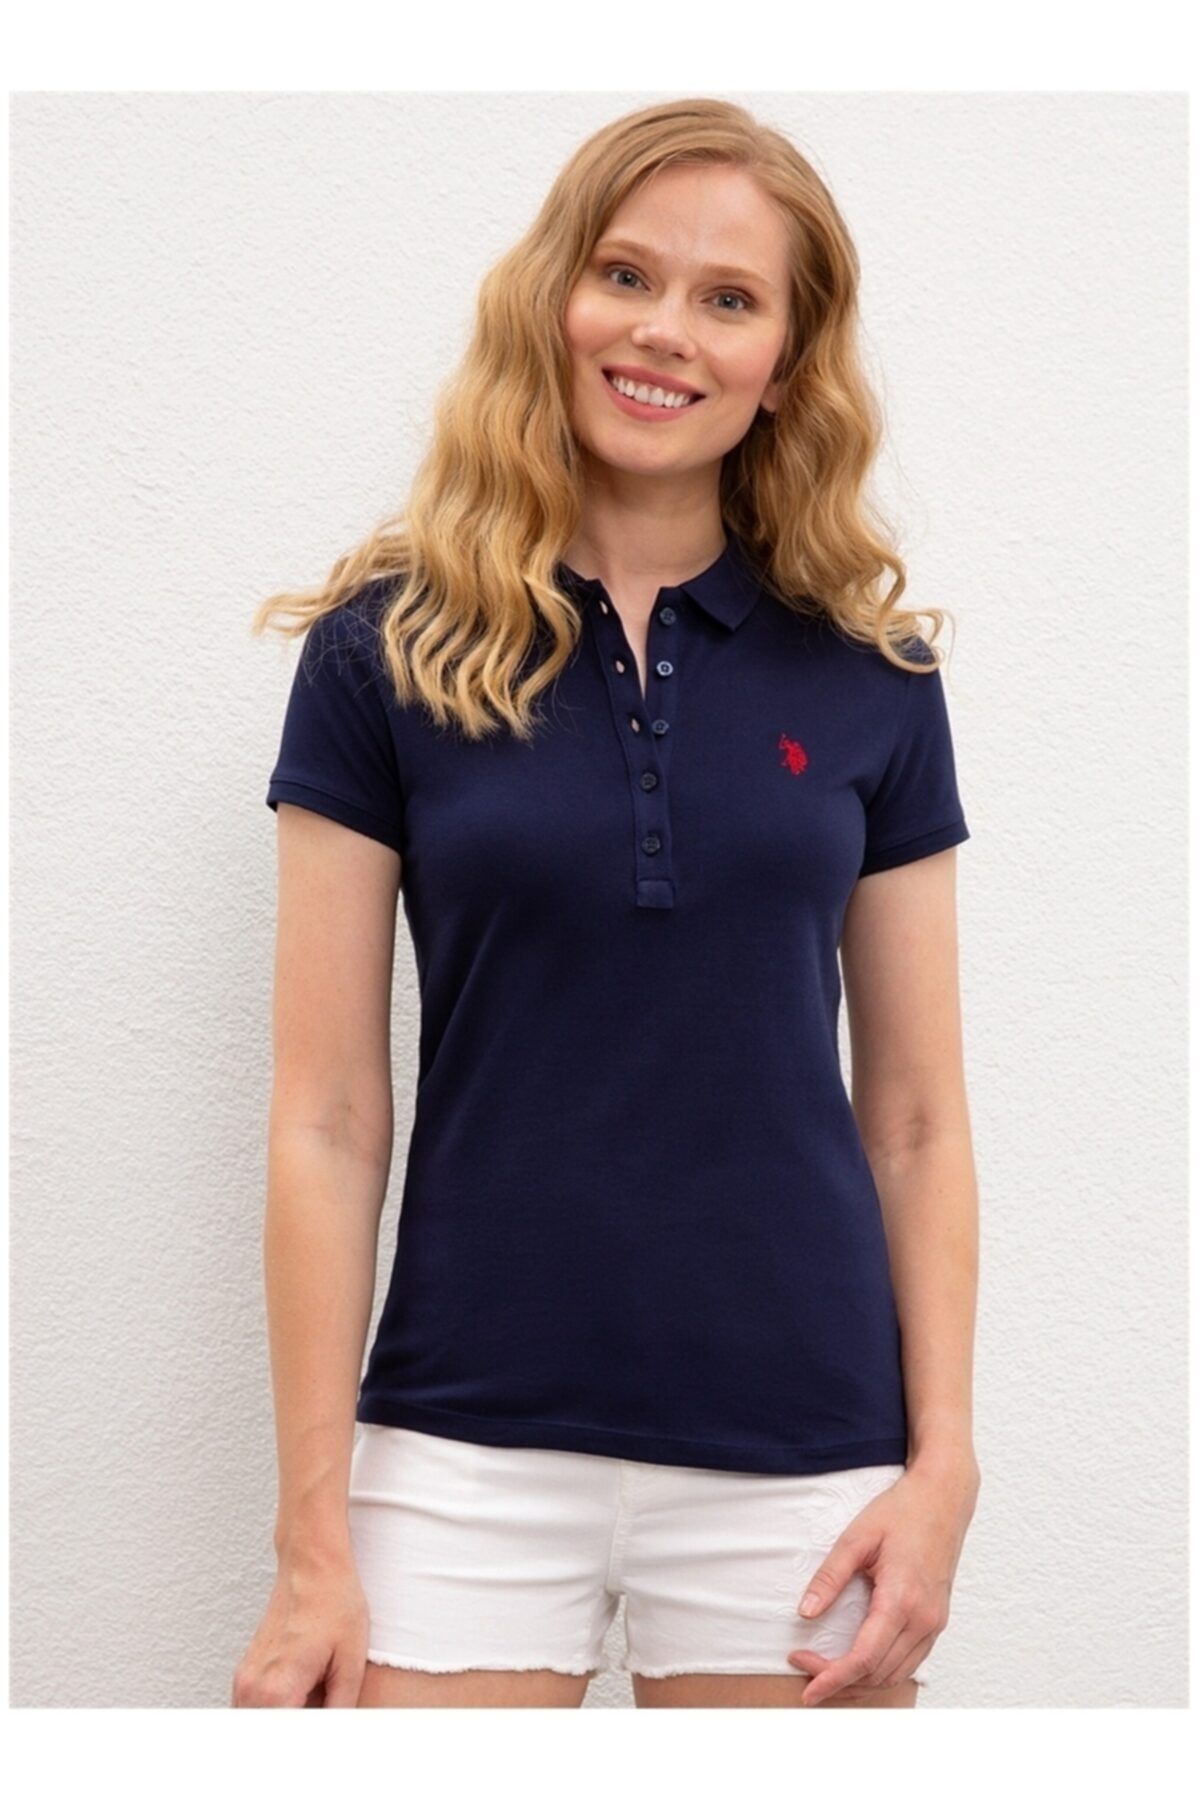 U.S. Polo Assn. Lacivert Kadın T-Shirt